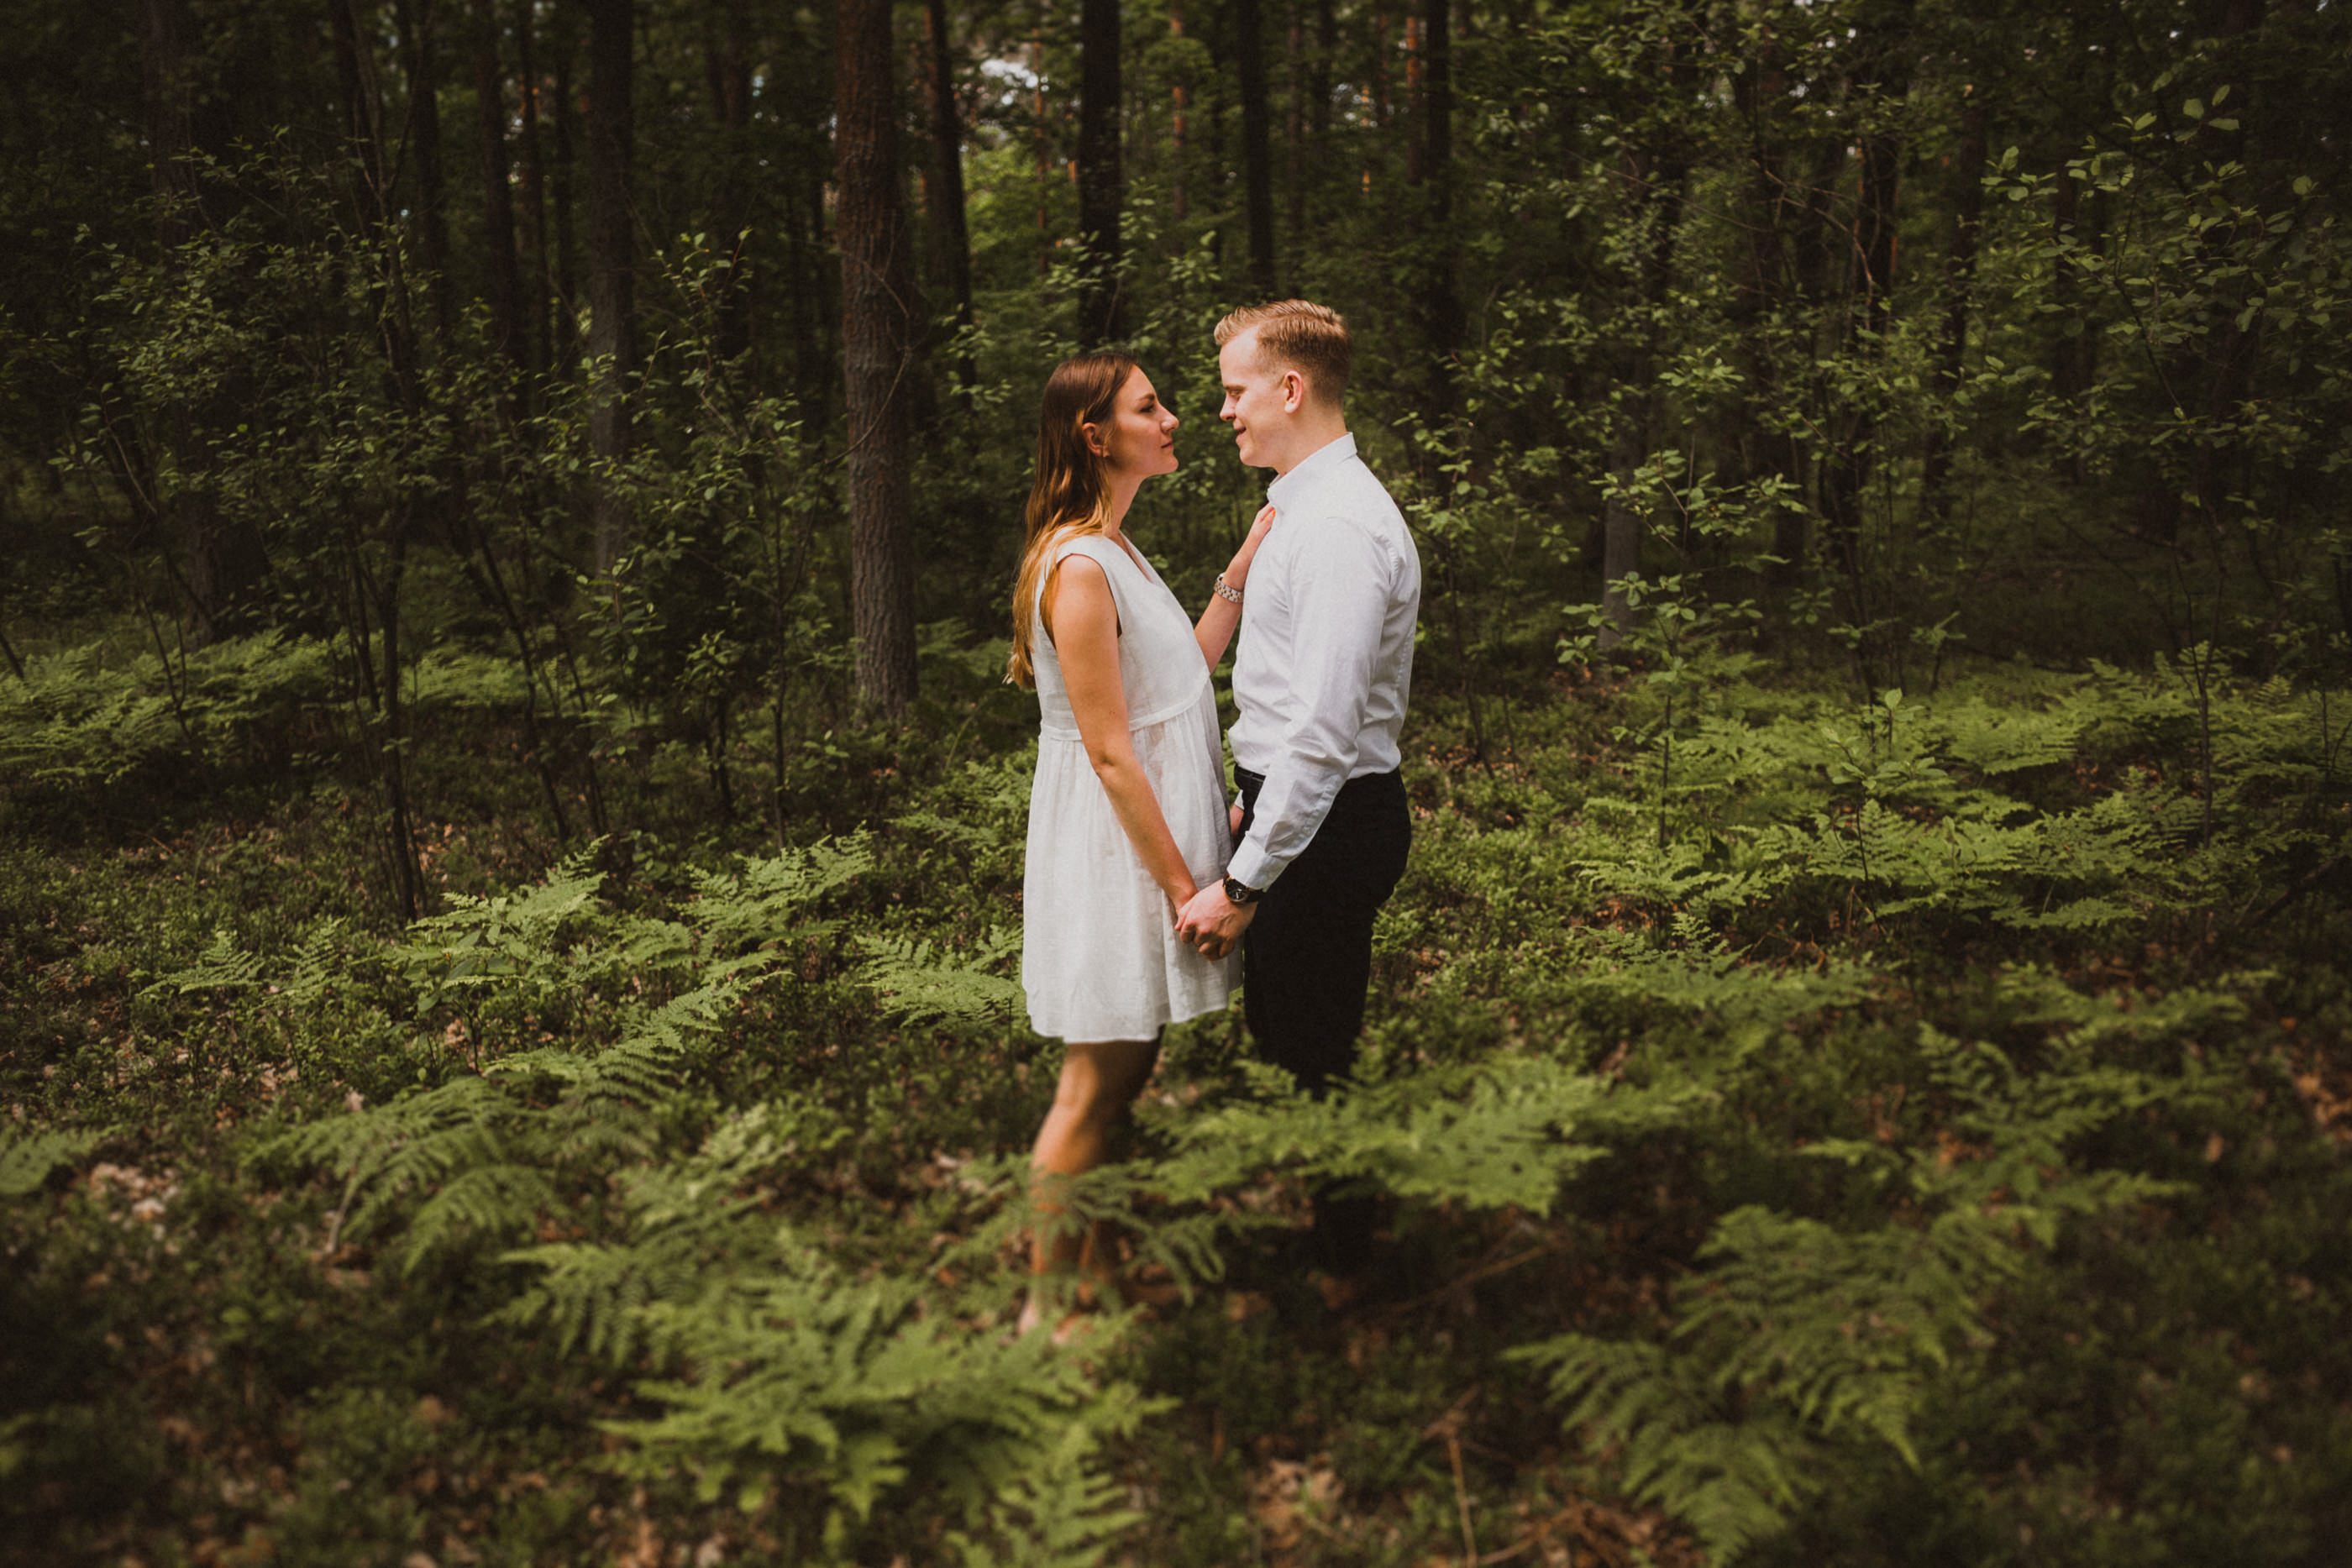 Krótka historia o miłości - Sesja narzeczeńska w lesie